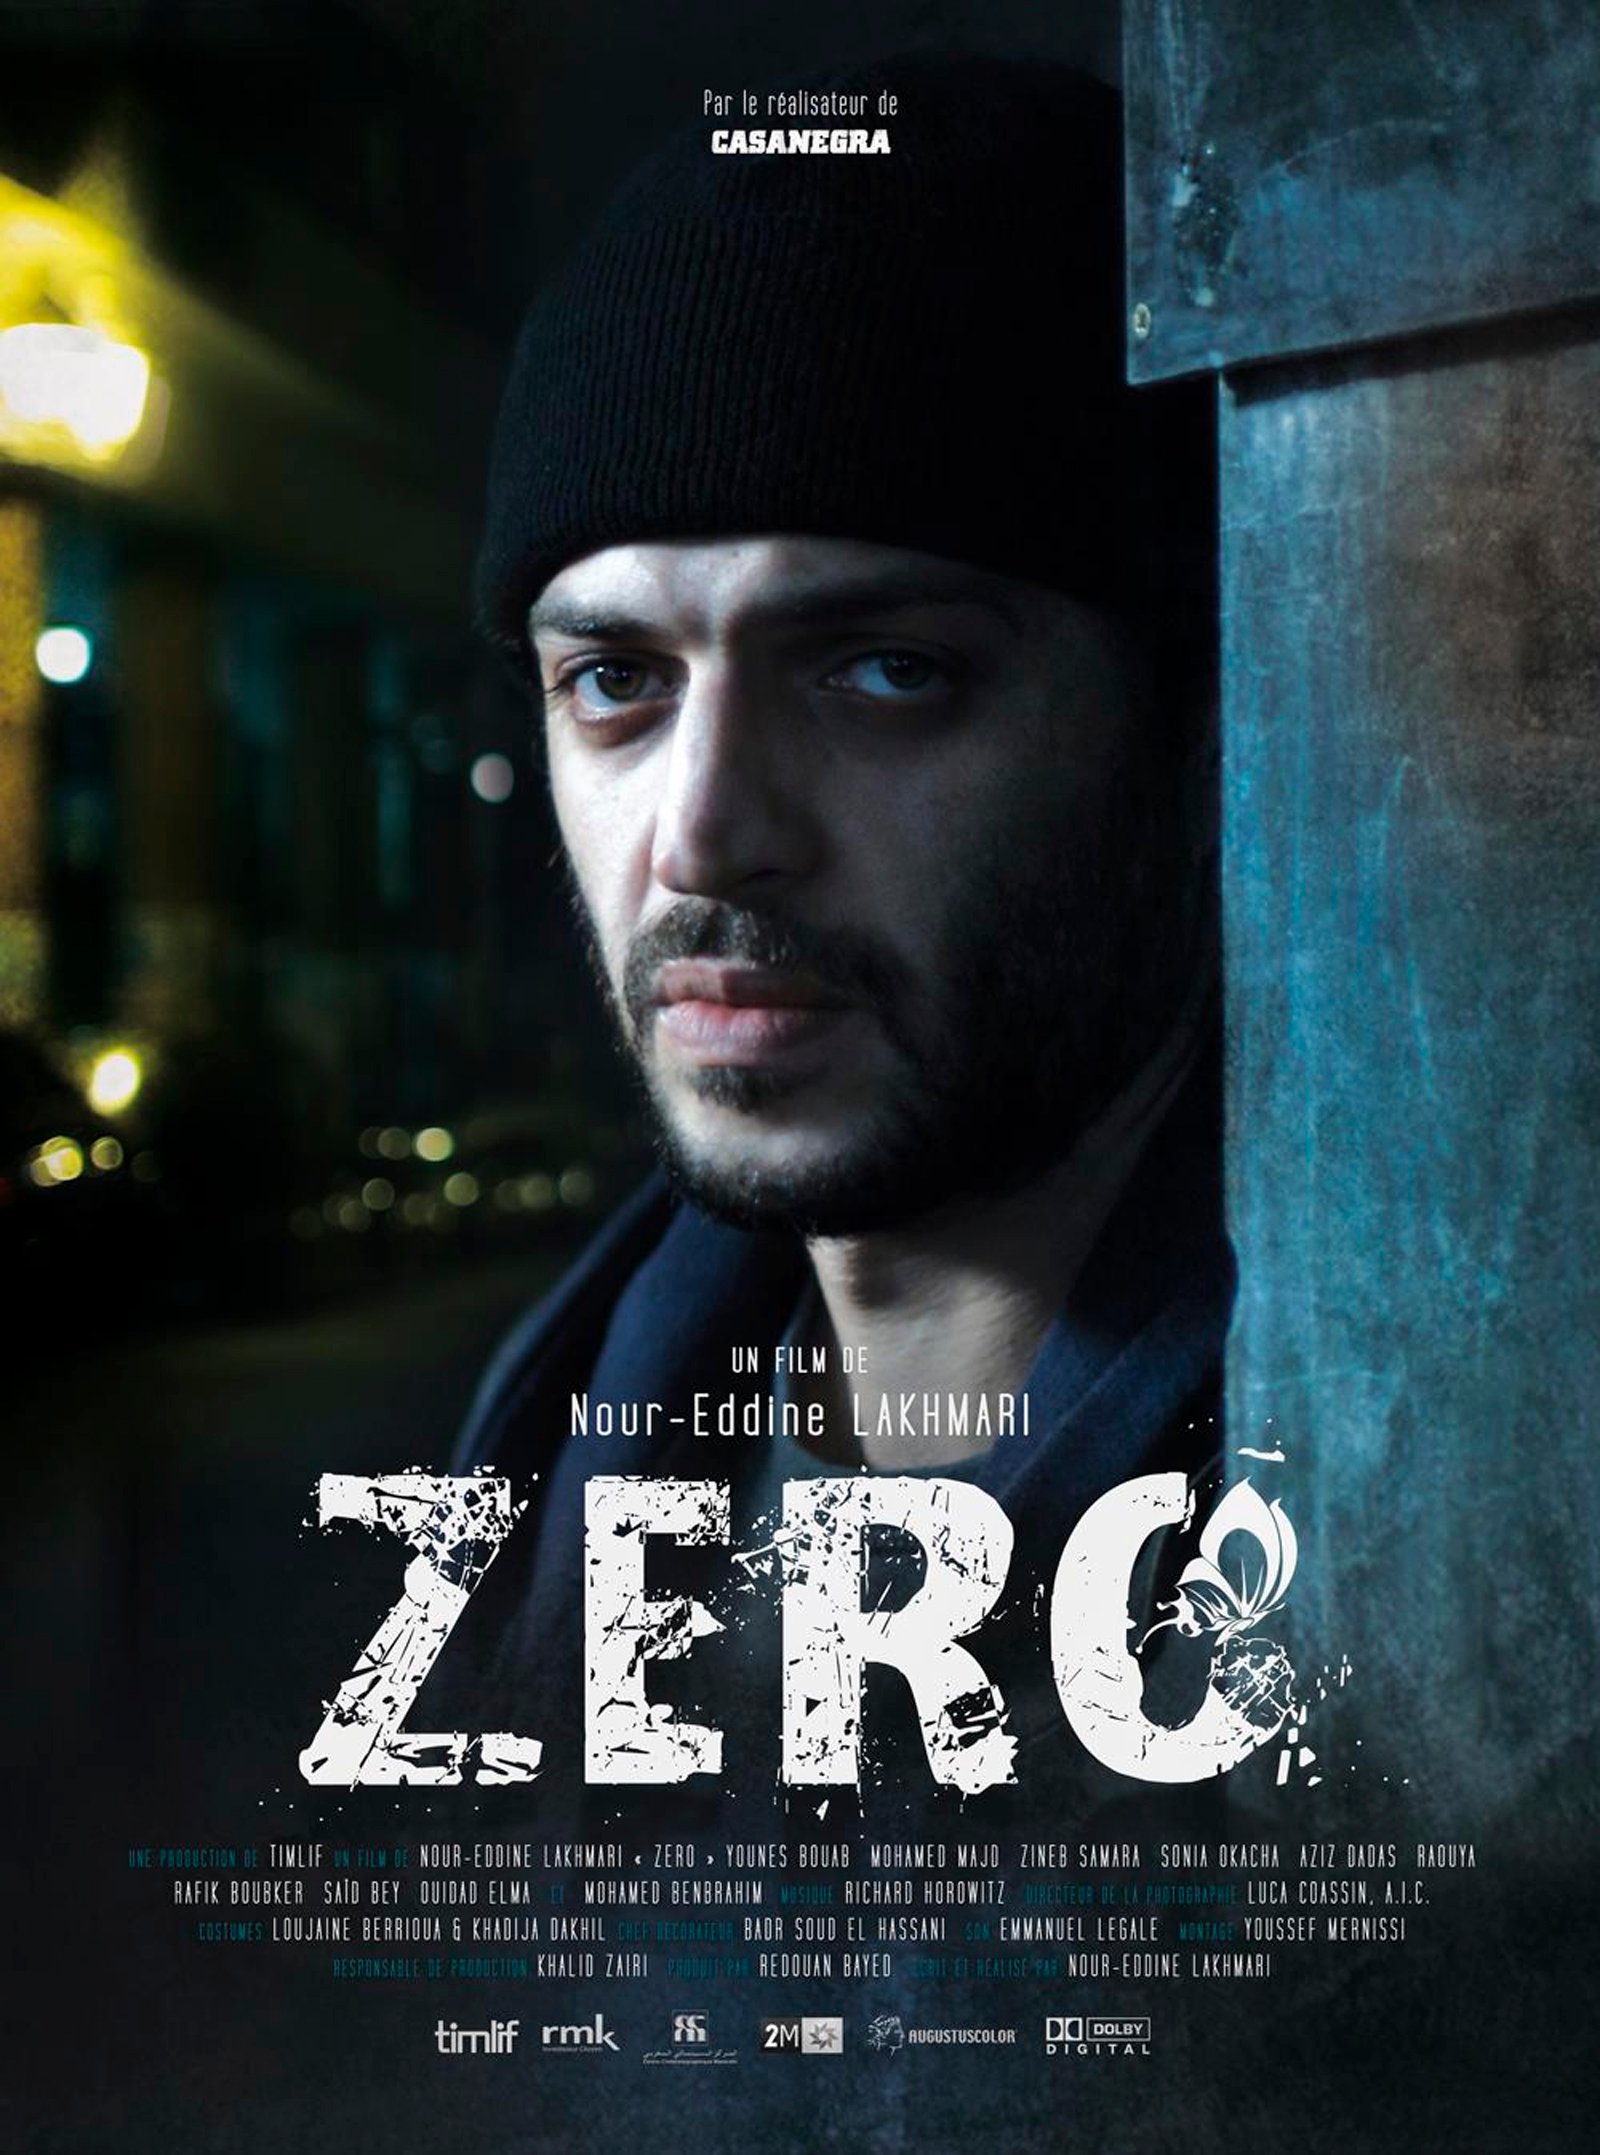 movie zero apk link